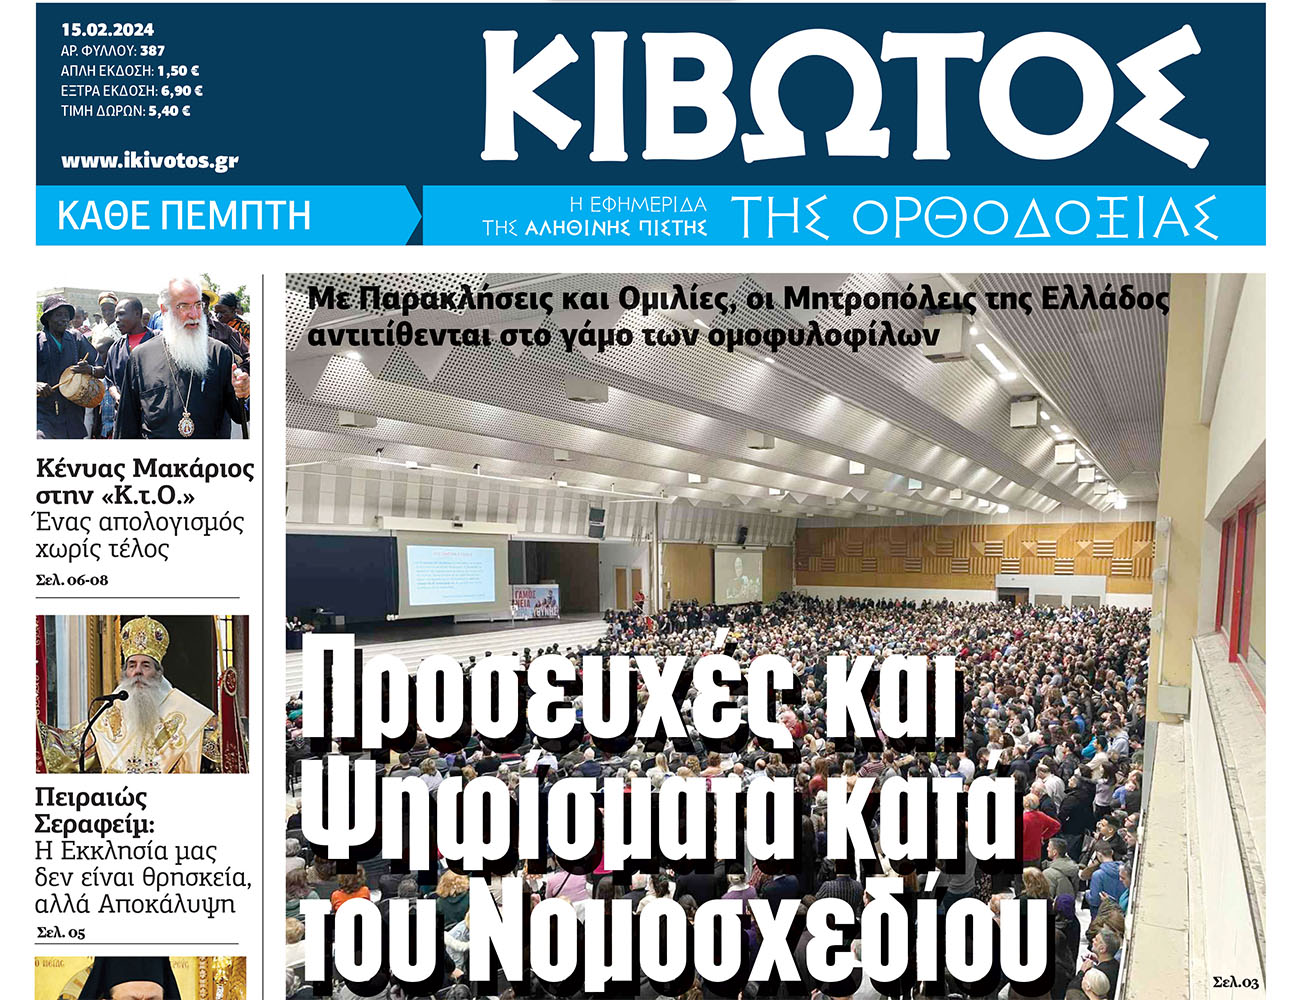 Την Πέμπτη, 15 Φεβρουαρίου, κυκλοφορεί το νέο φύλλο της Εφημερίδας «Κιβωτός της Ορθοδοξίας»